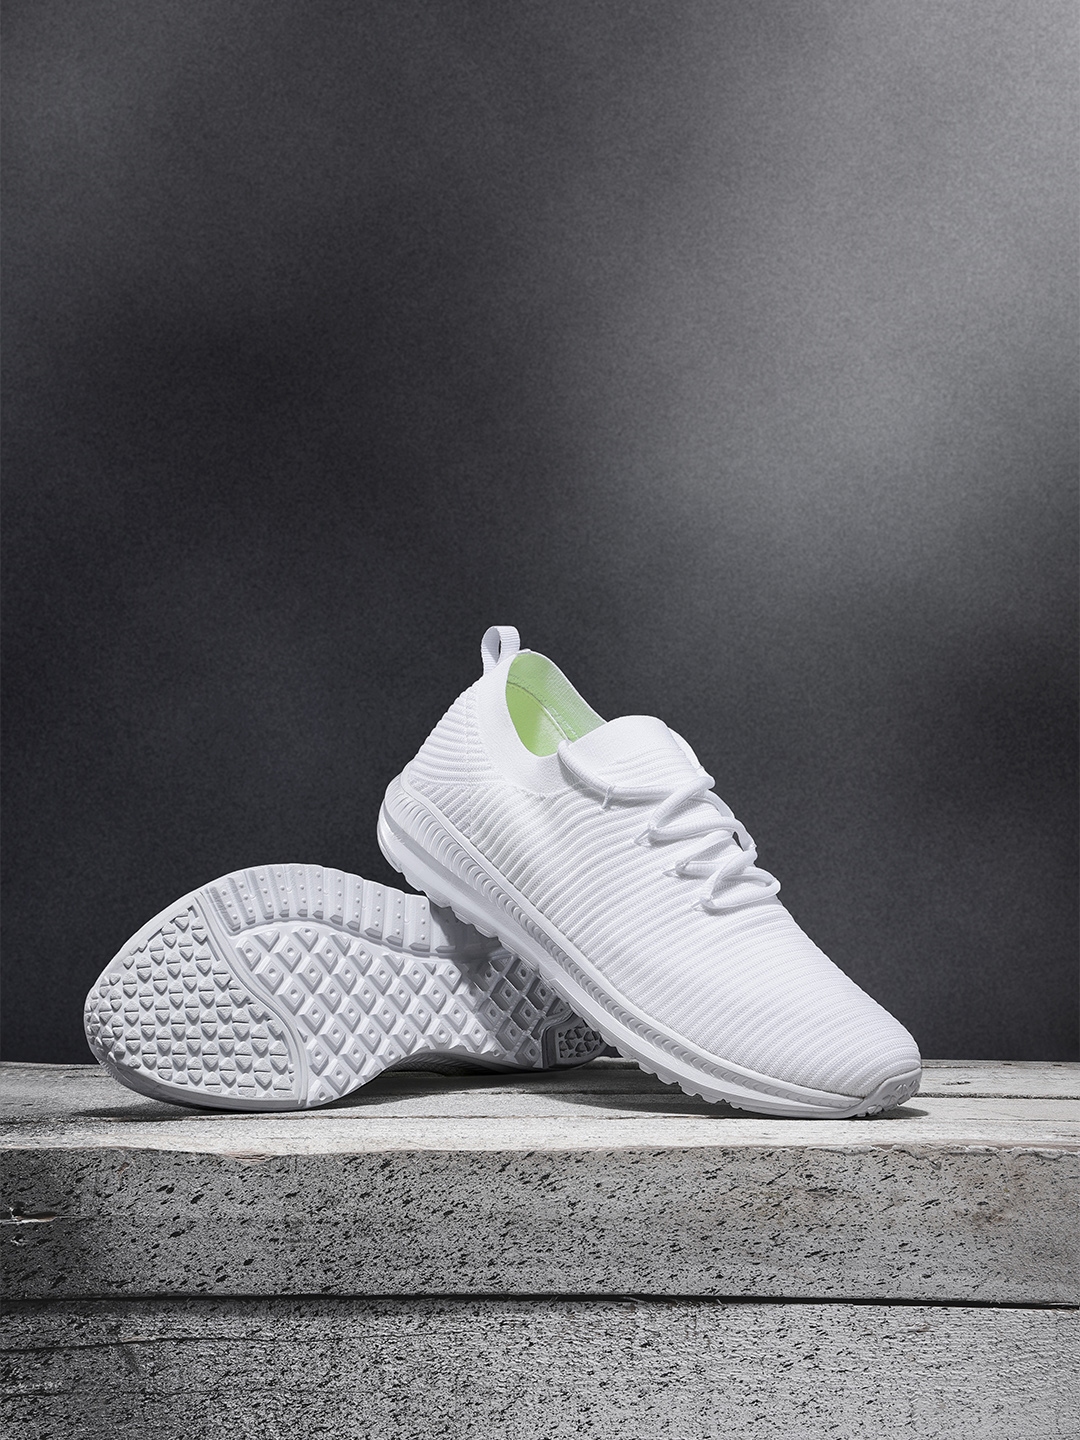 myntra hrx white shoes